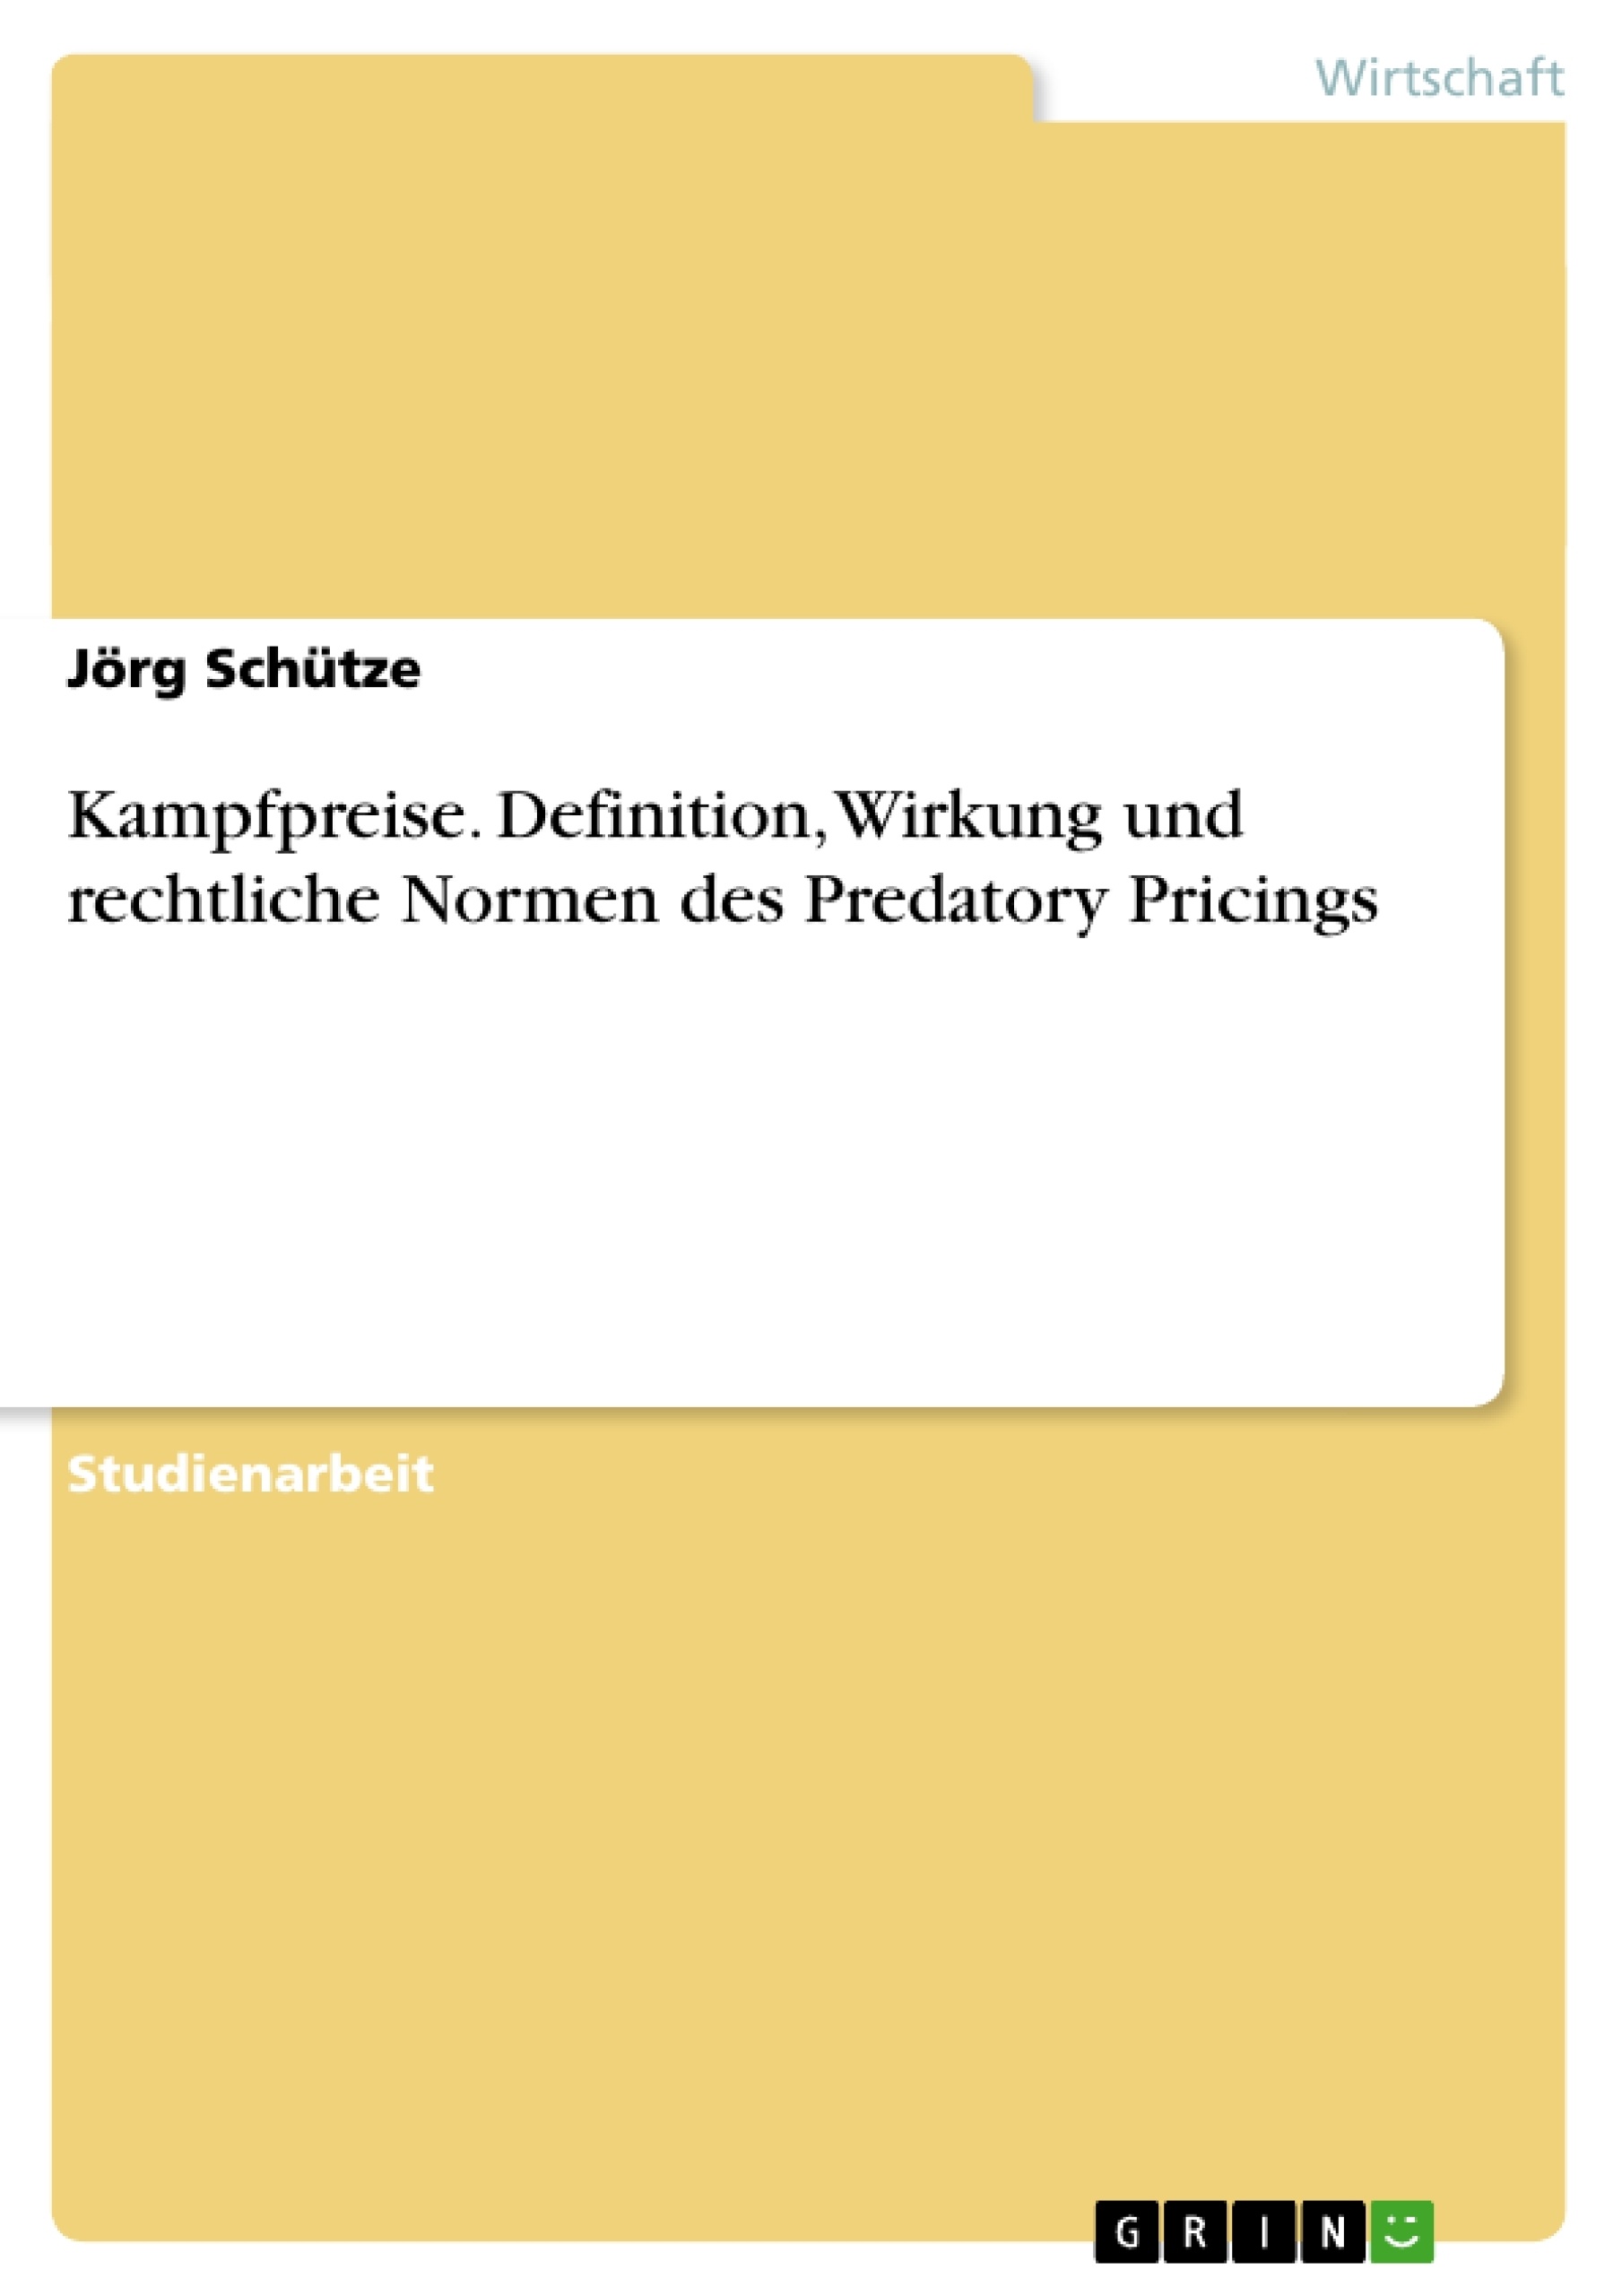 Title: Kampfpreise. Definition, Wirkung und rechtliche Normen des Predatory Pricings